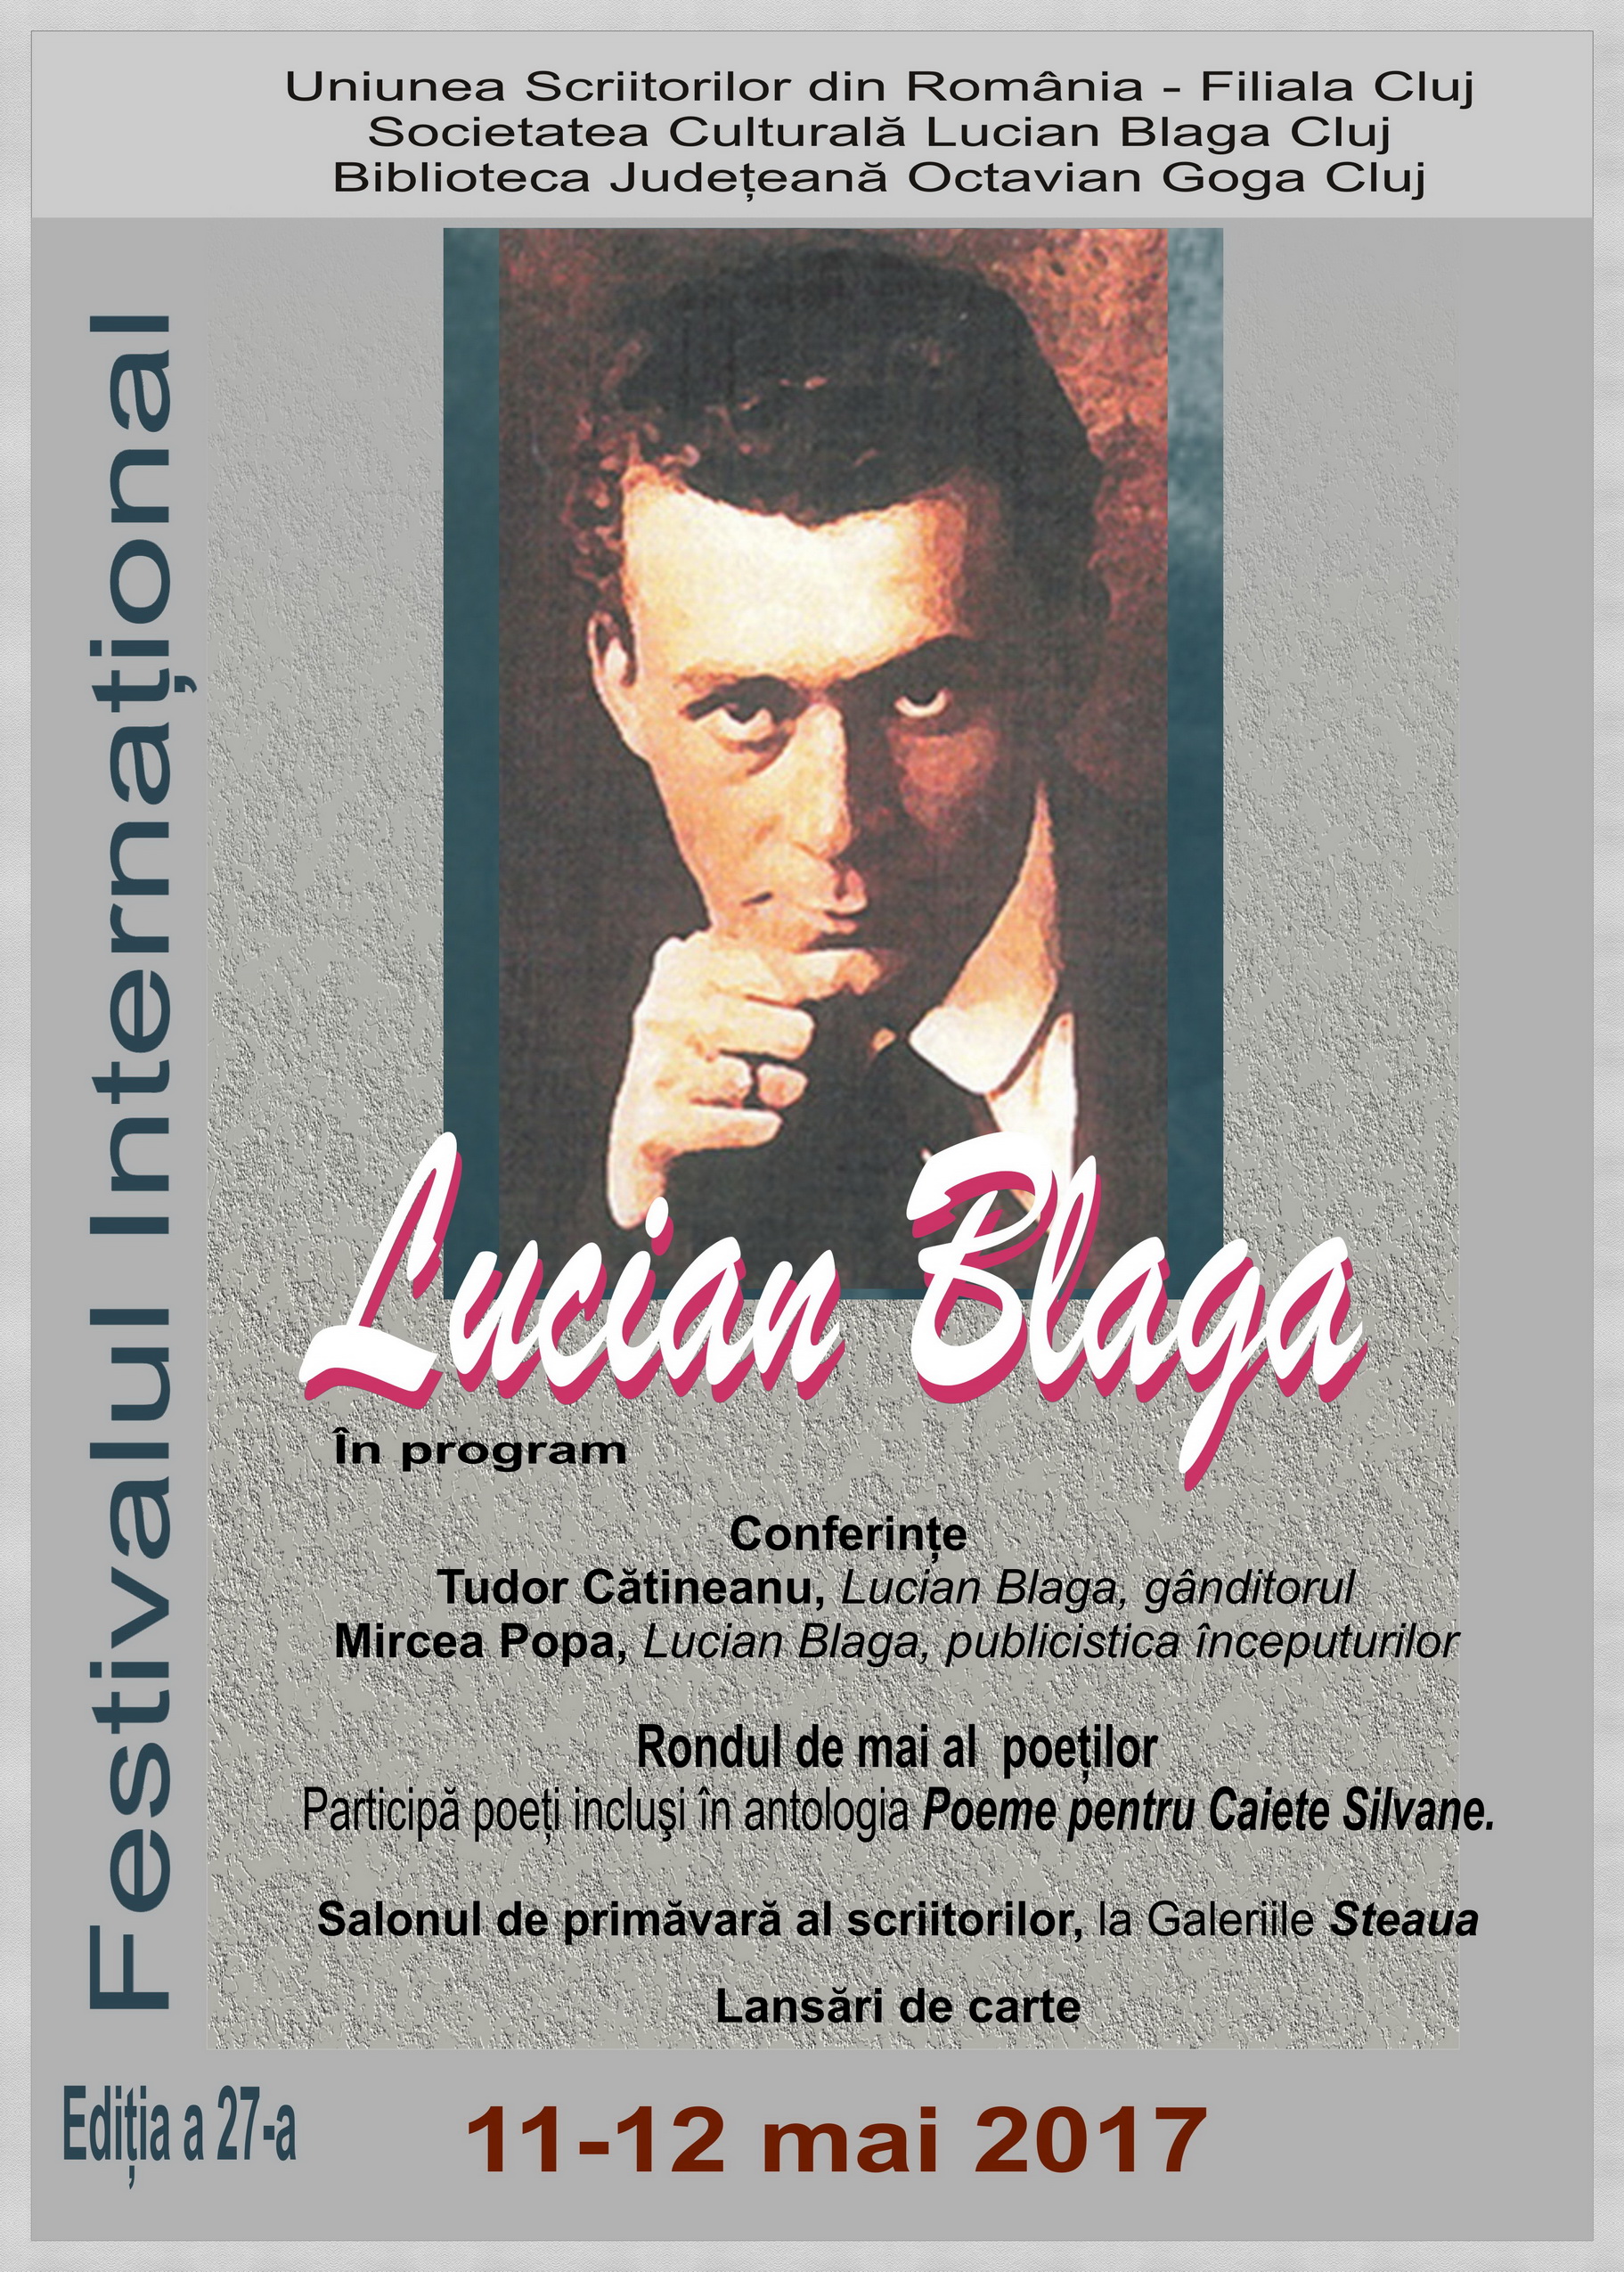 Festivalul Internaţional Lucian Blaga, ediţia a 27-a